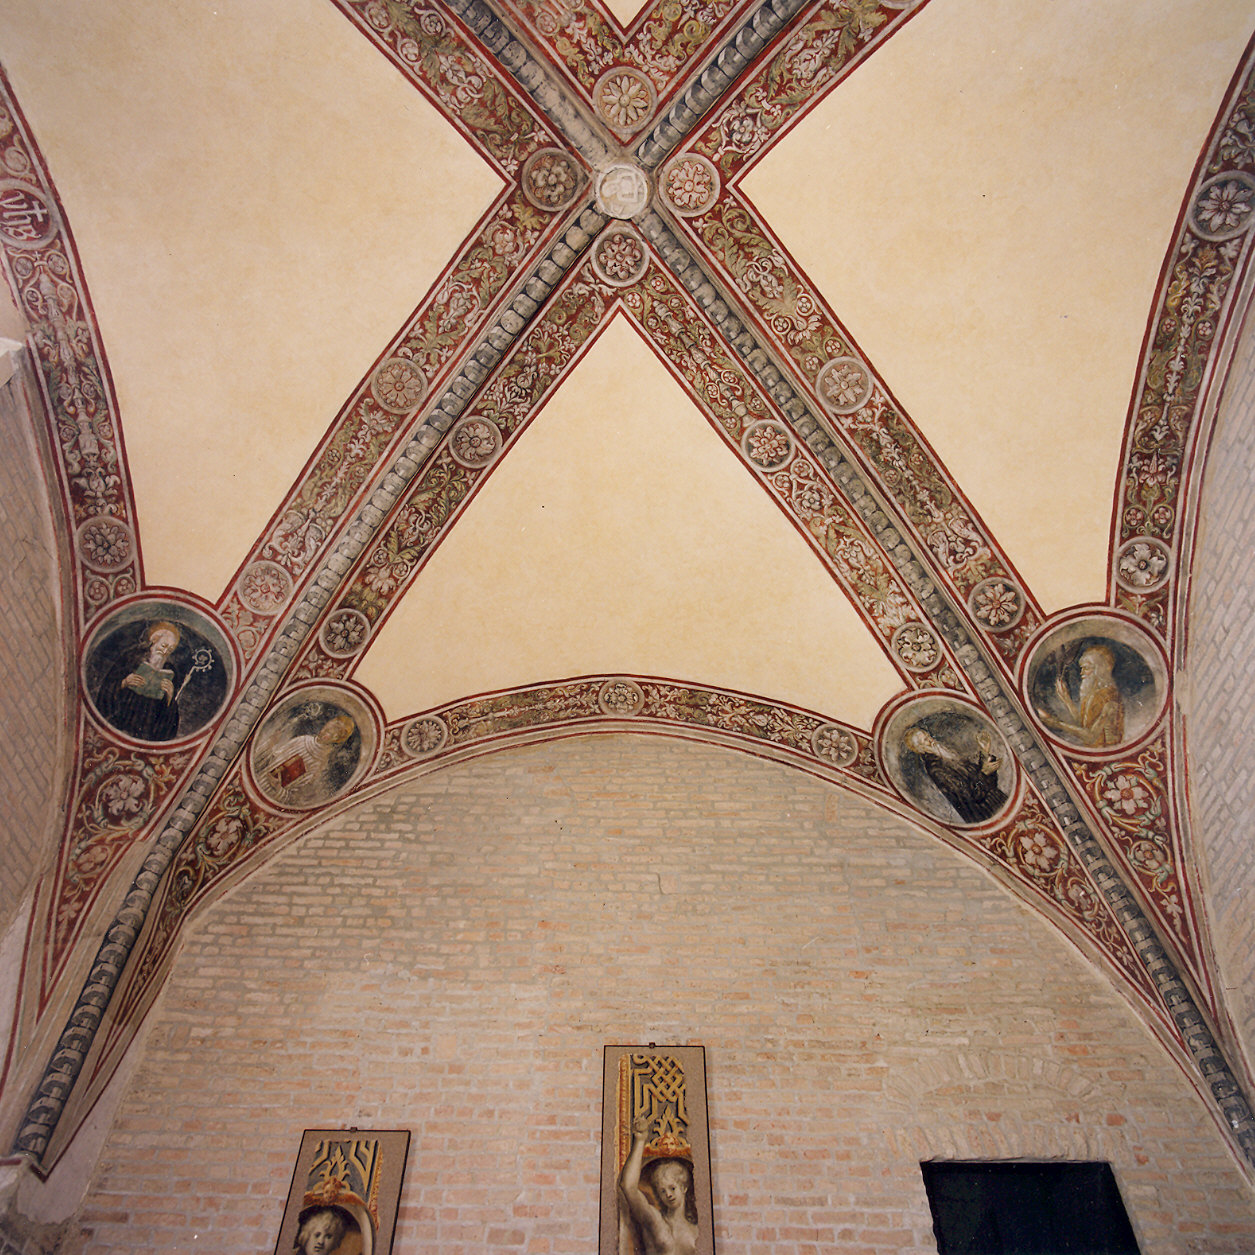 motivi decorativi vegetali con santi (decorazione pittorica, complesso decorativo) - ambito parmense (ultimo quarto sec. XVI)